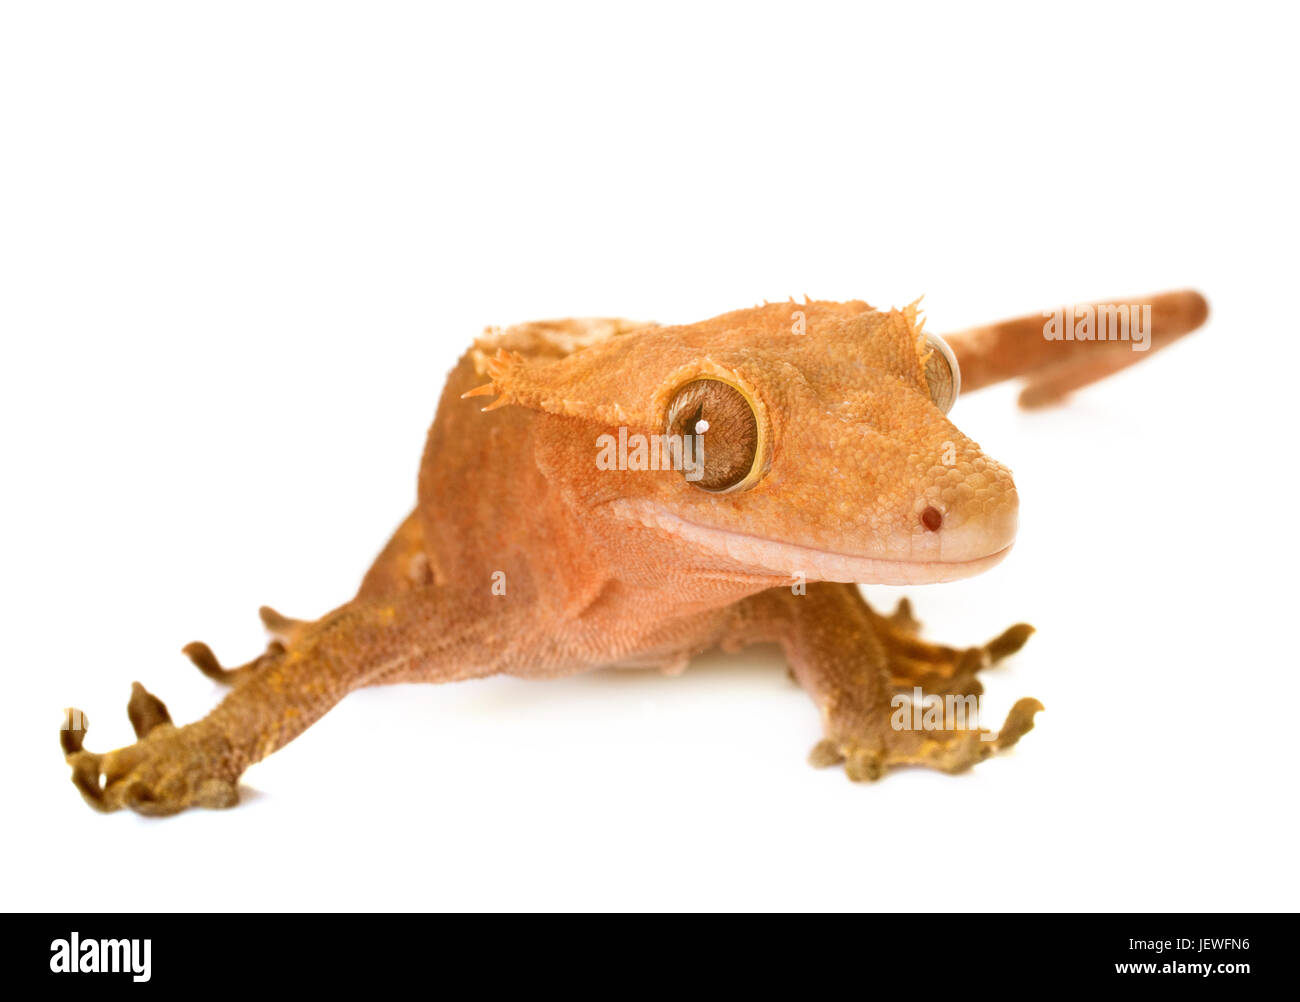 Crested gecko davanti a uno sfondo bianco Foto Stock